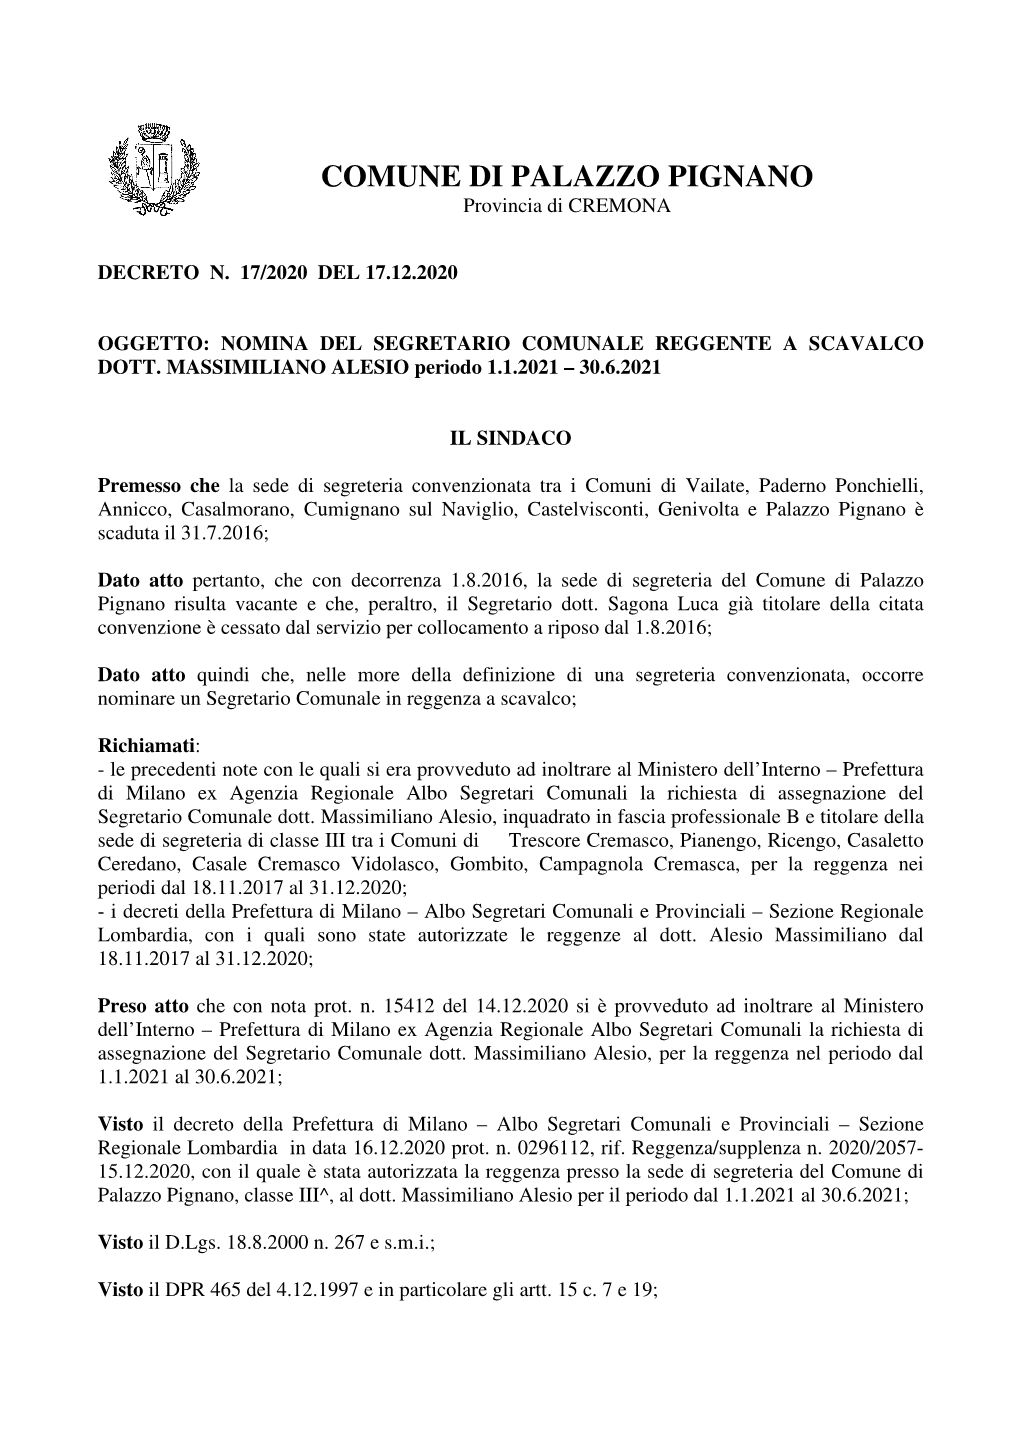 Decreto N. 17-2020 Reggenza a Scavalco